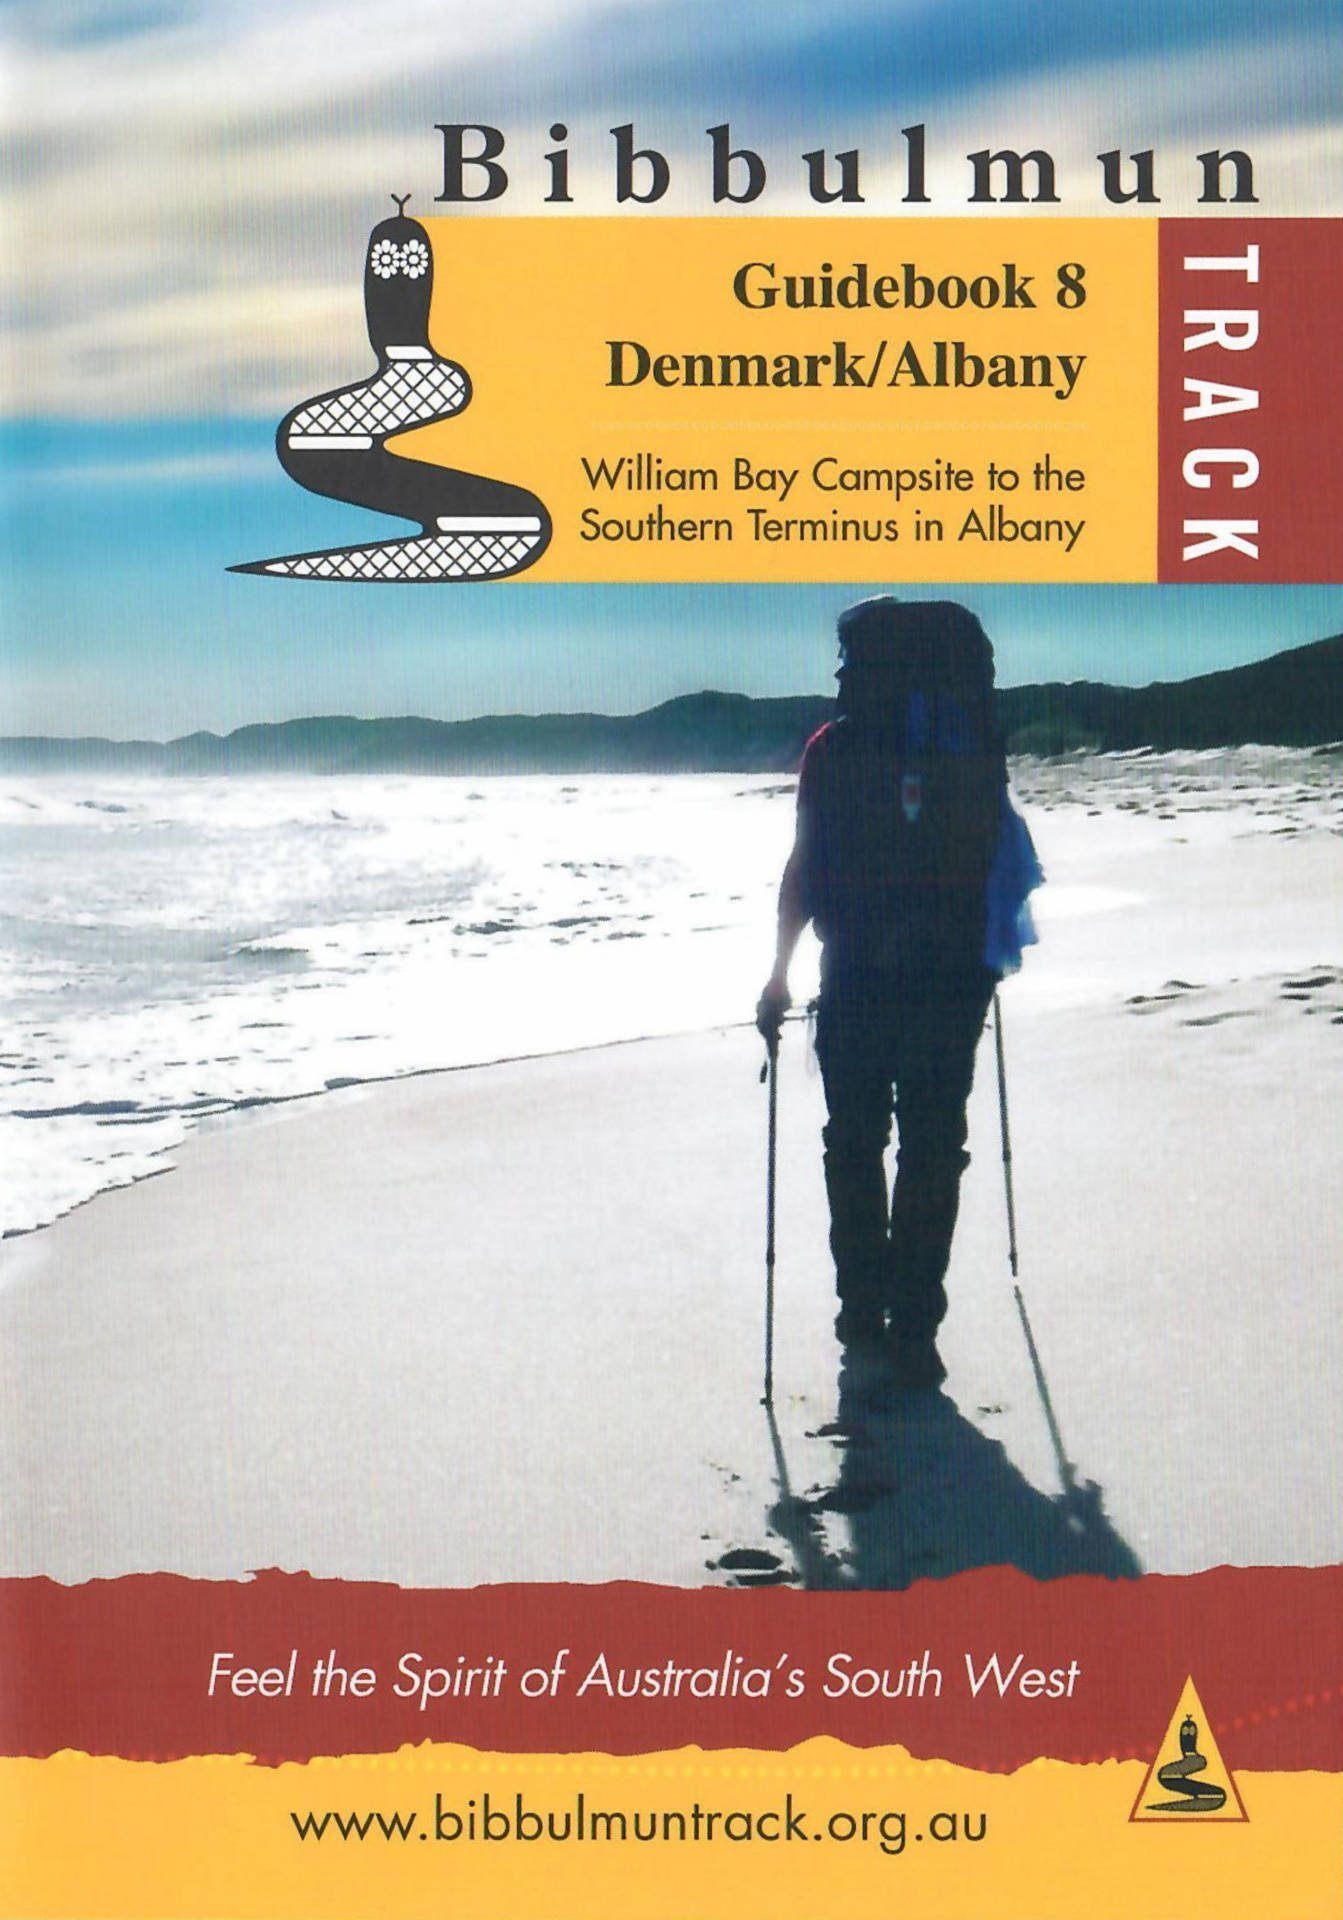 The Bibbulmun Track Guidebook 8 – Denmark / Albany